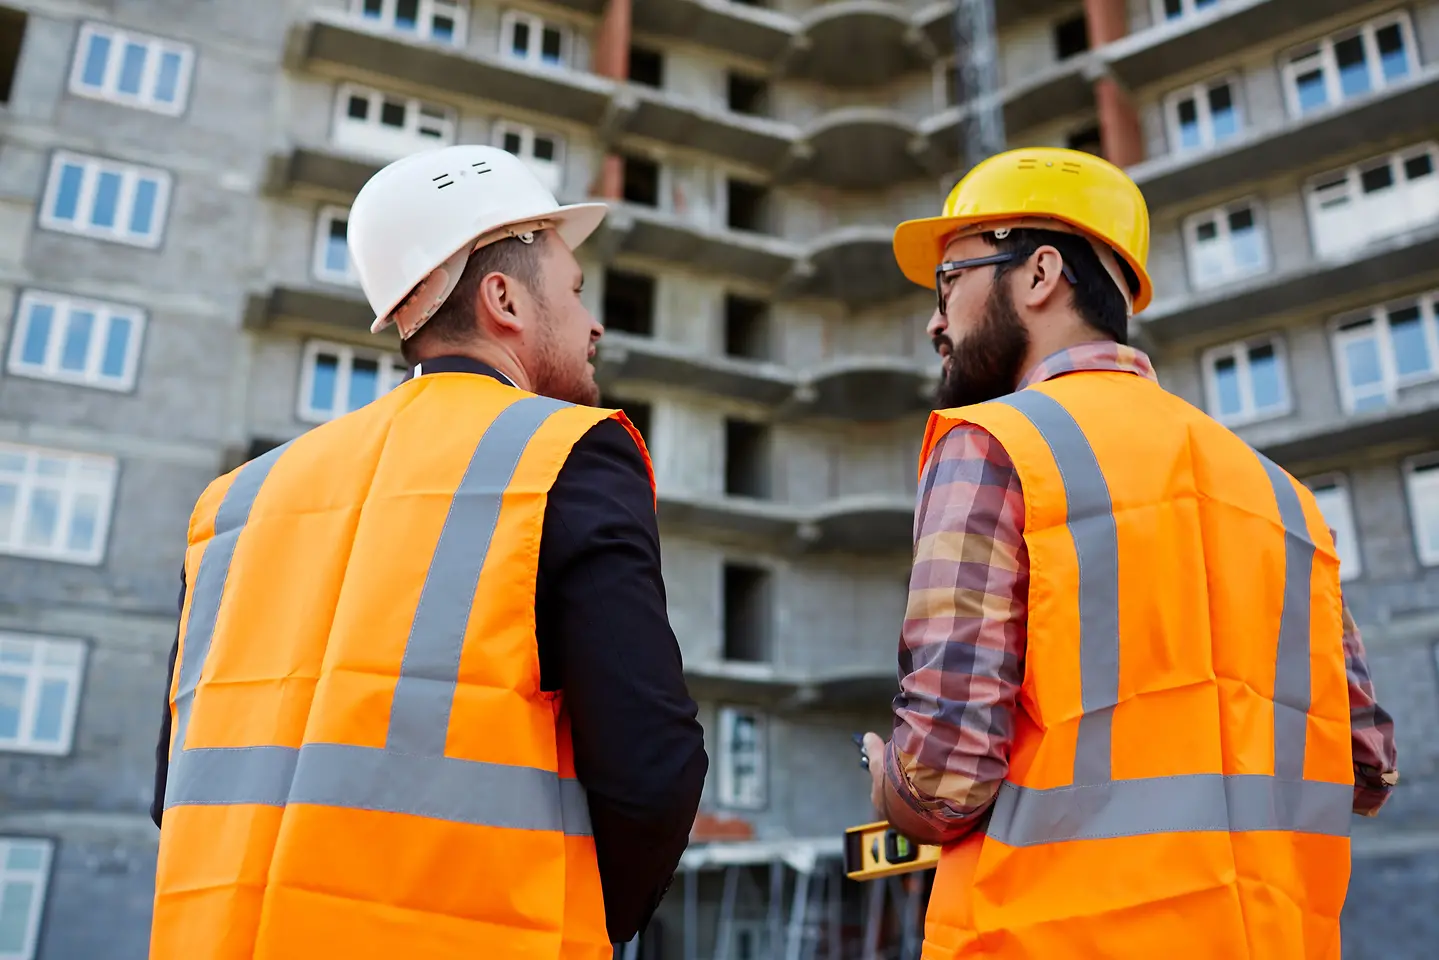 Imagem de dois profissionais da construção uniformizados conversando celular em frente a um prédio